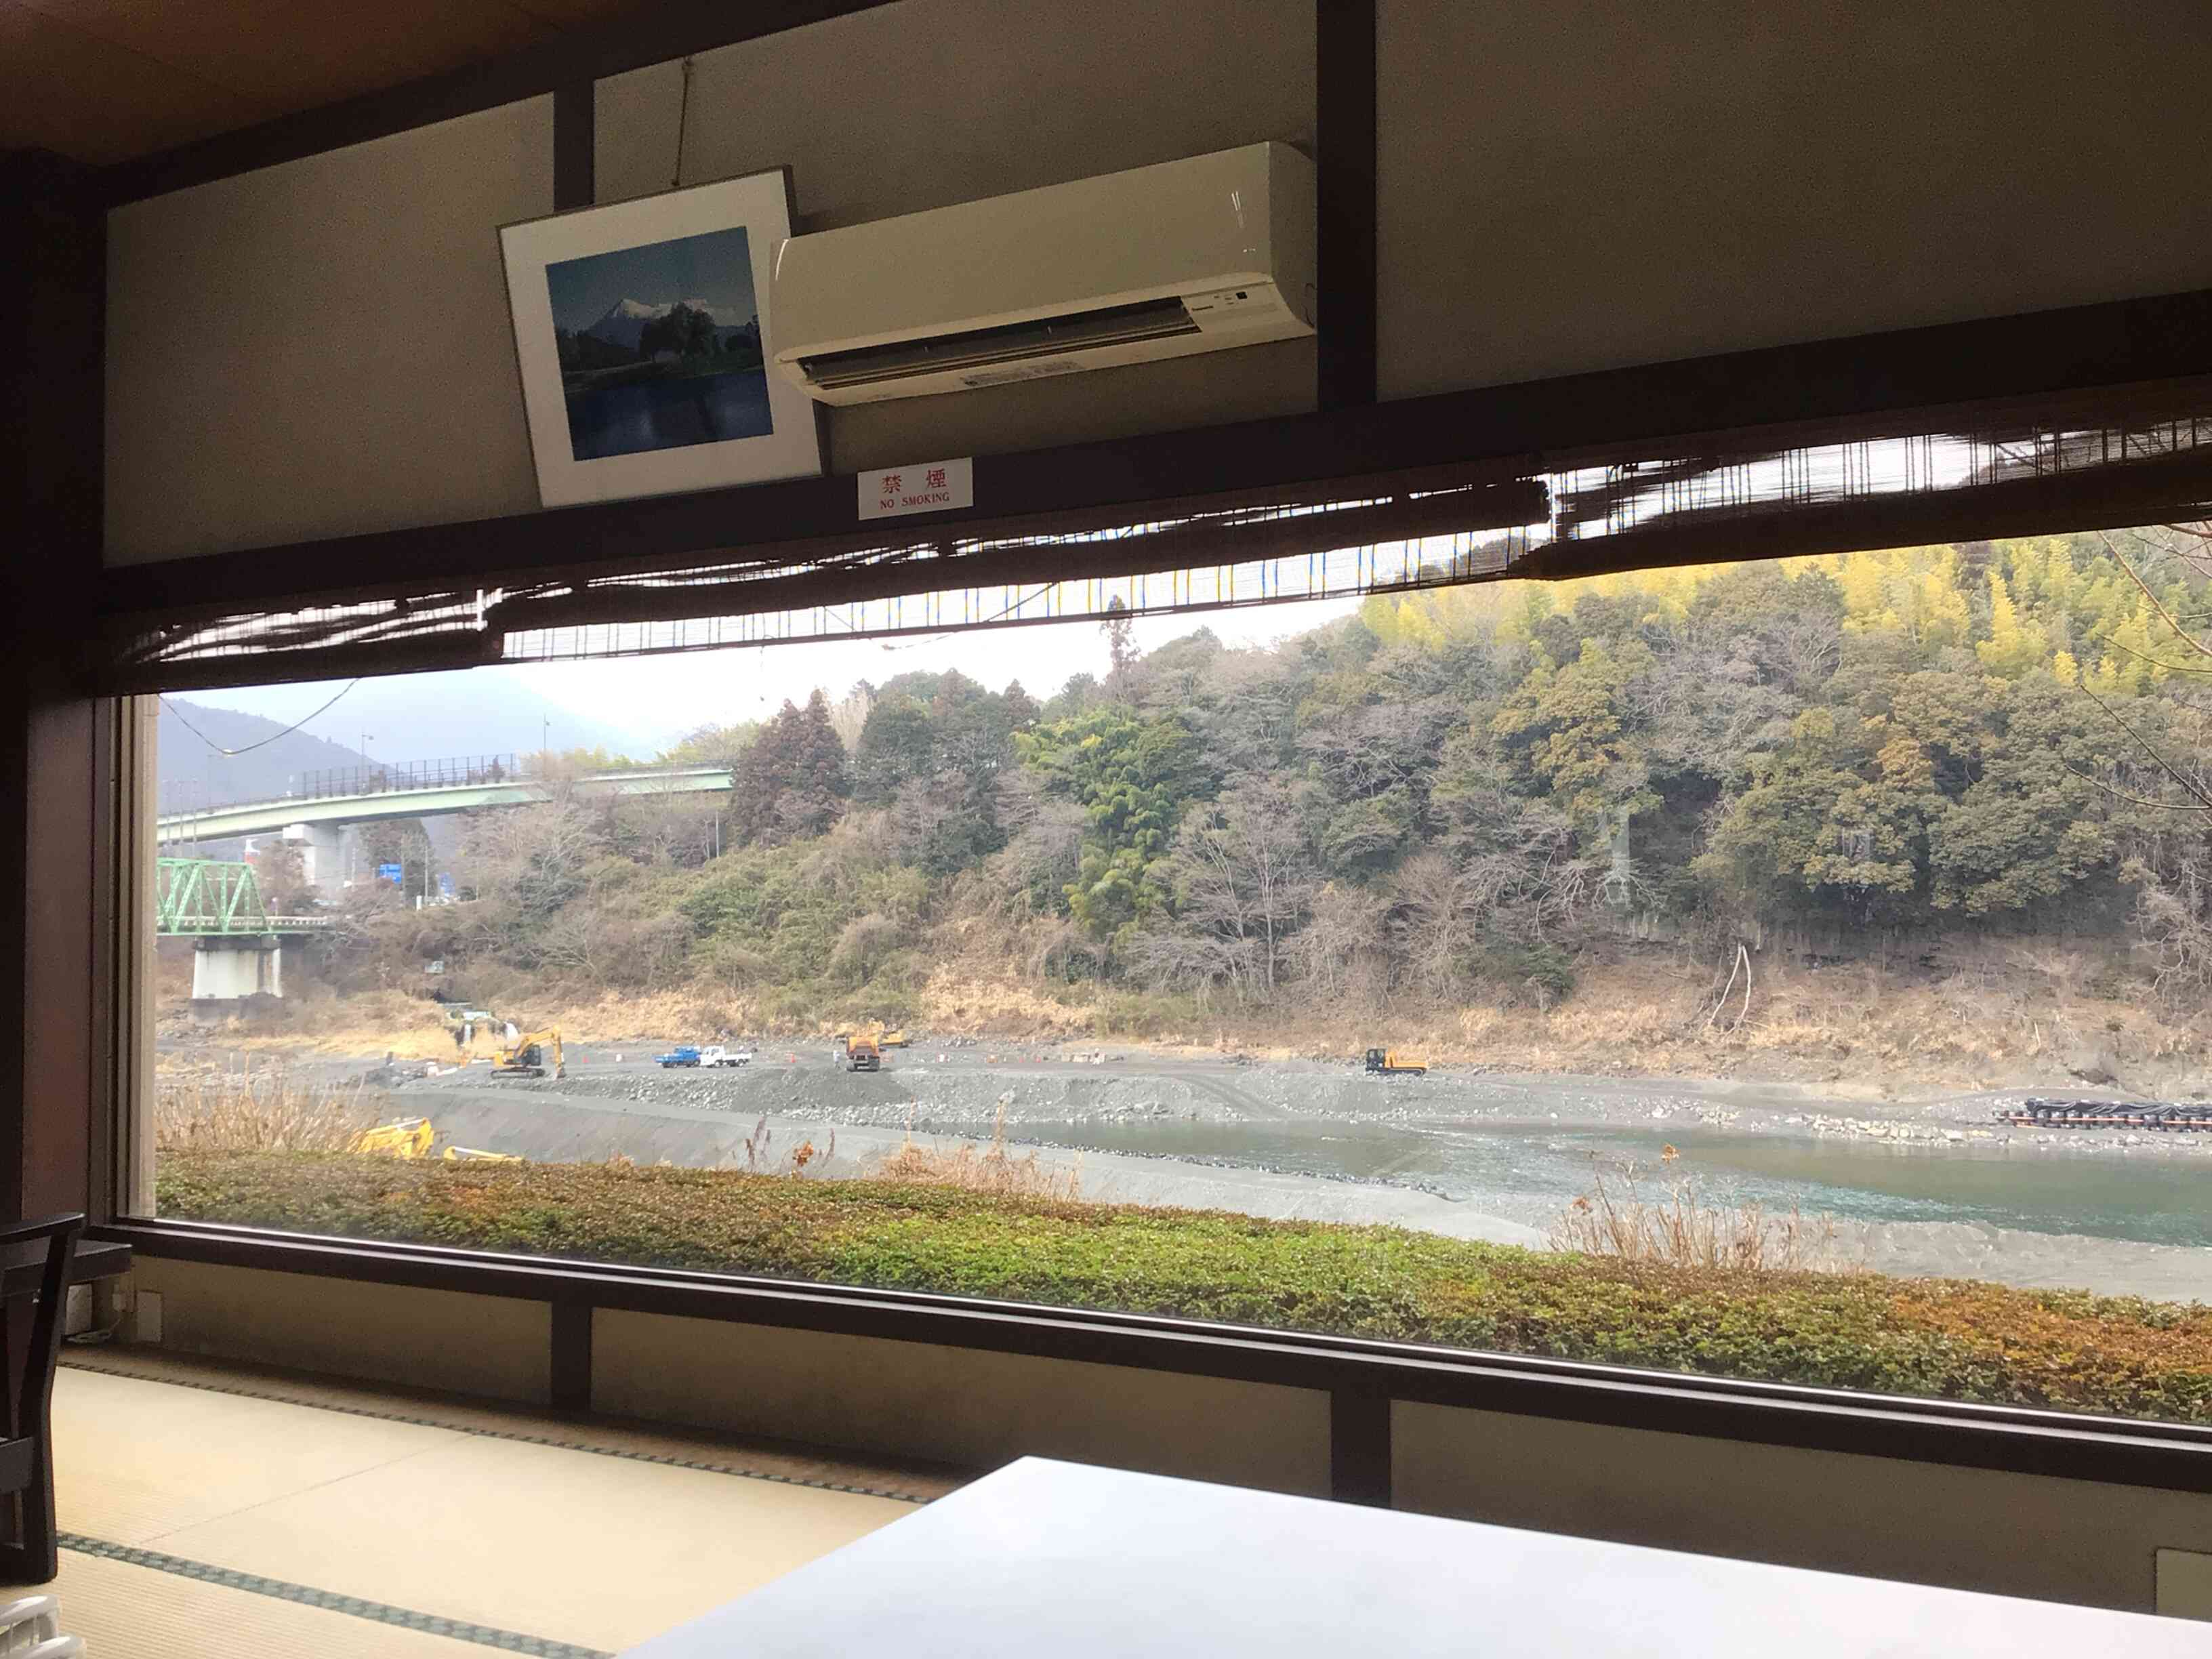 大窓から見える富士川です。
春の新緑、夏の澄み切った水、秋の紅葉、冬の雪景色。
四季折々の景色と料理をお楽しみ下さい。